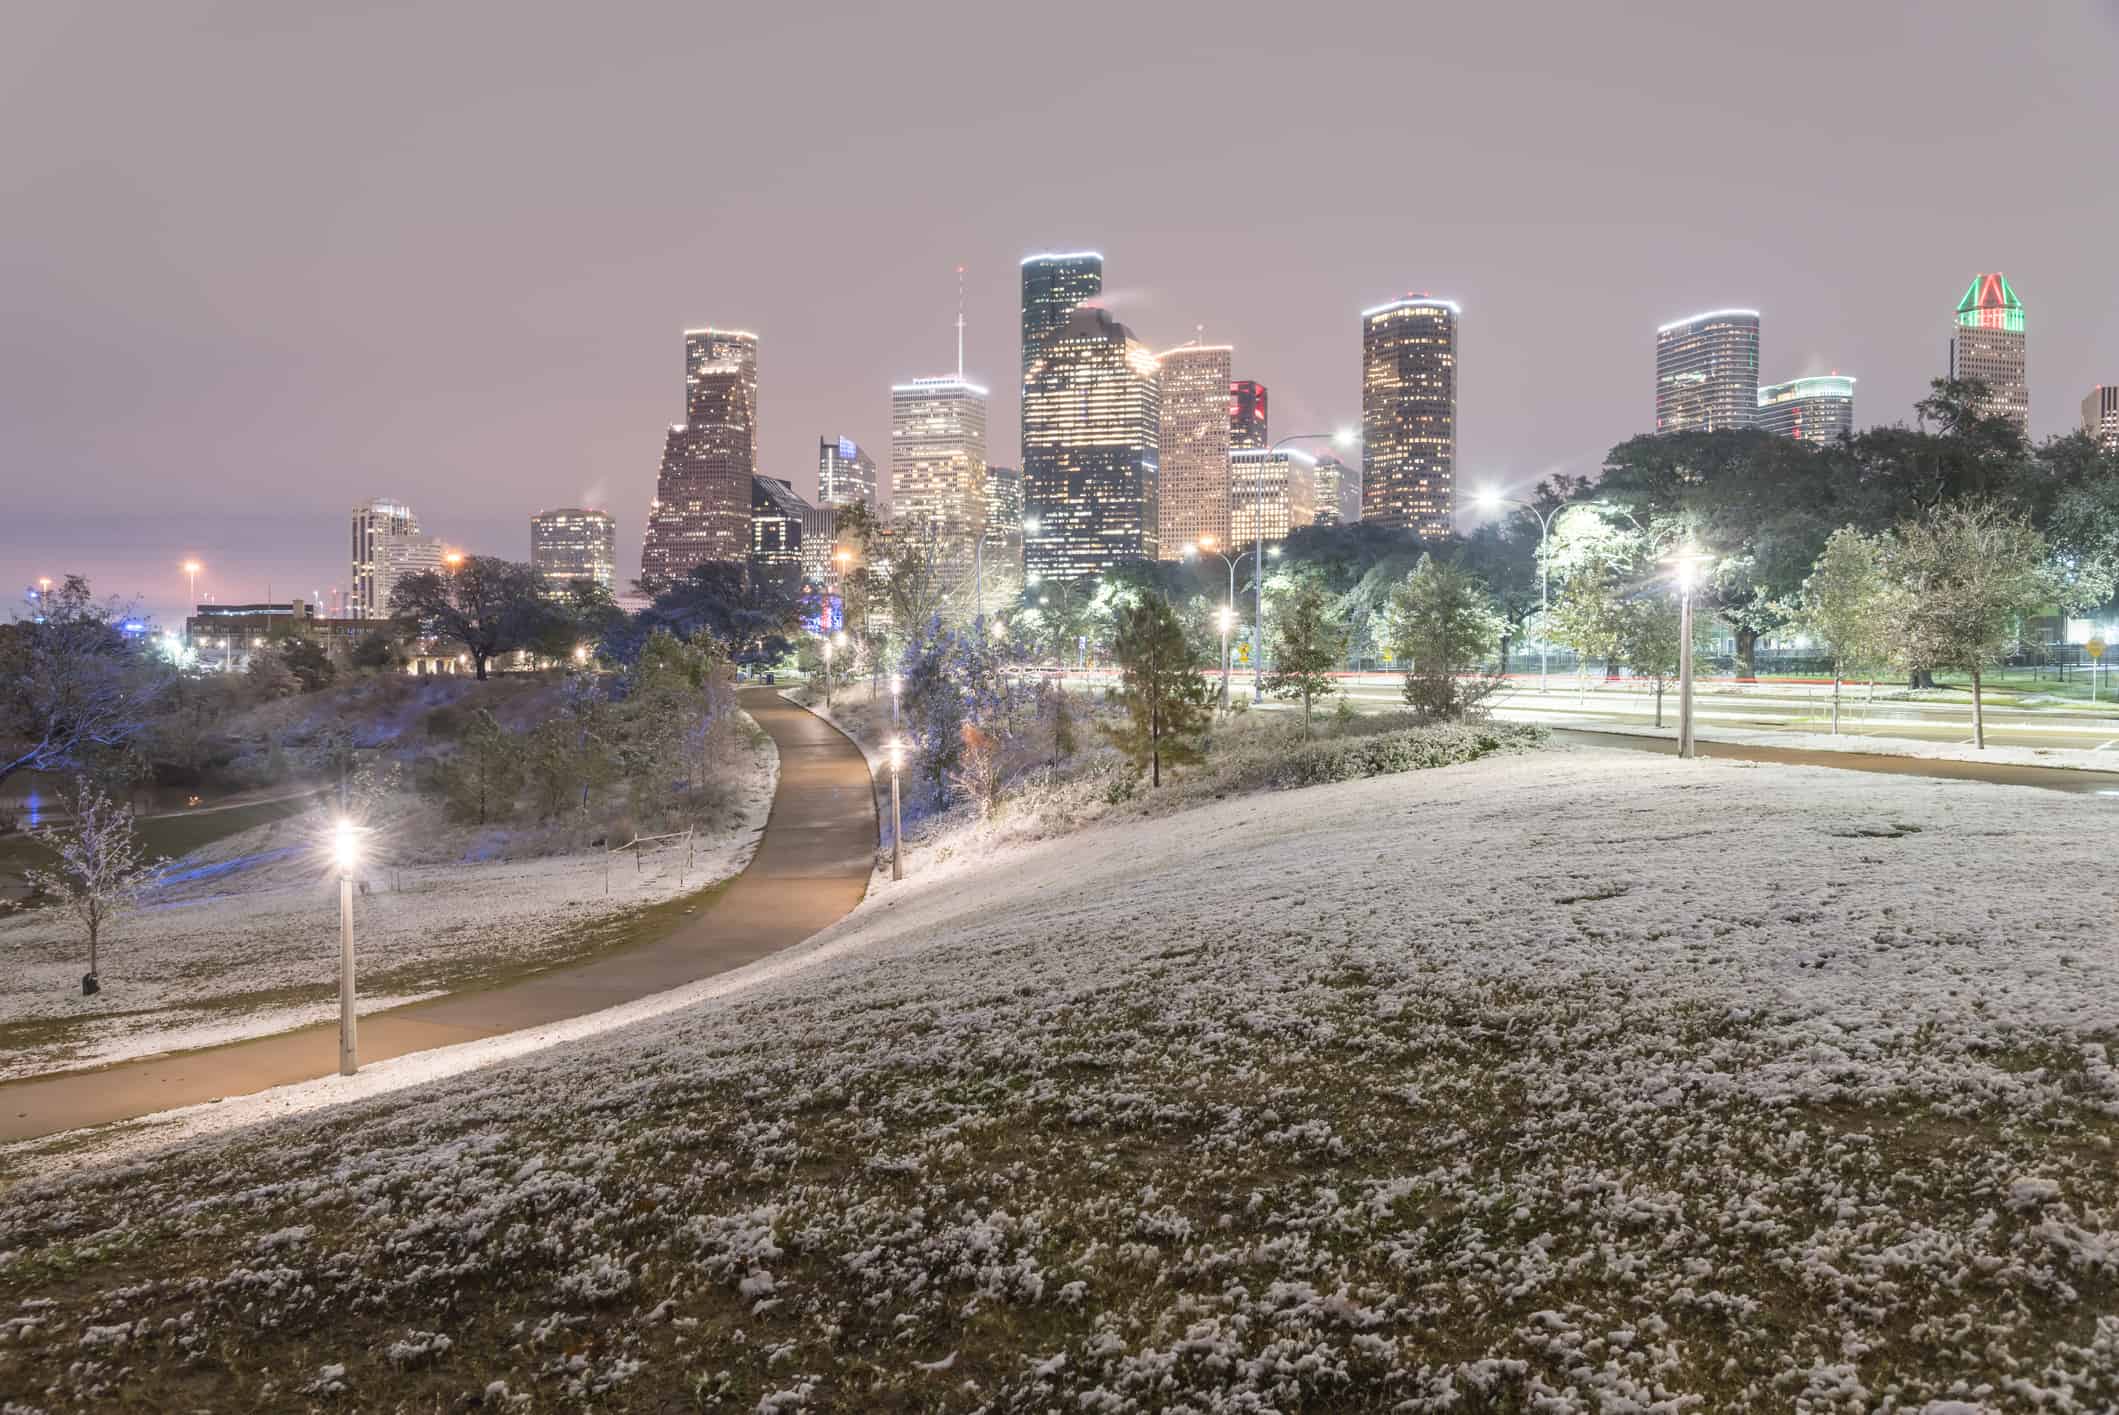 Nevicate insolite nel centro di Houston e nevicate a Eleanor Park